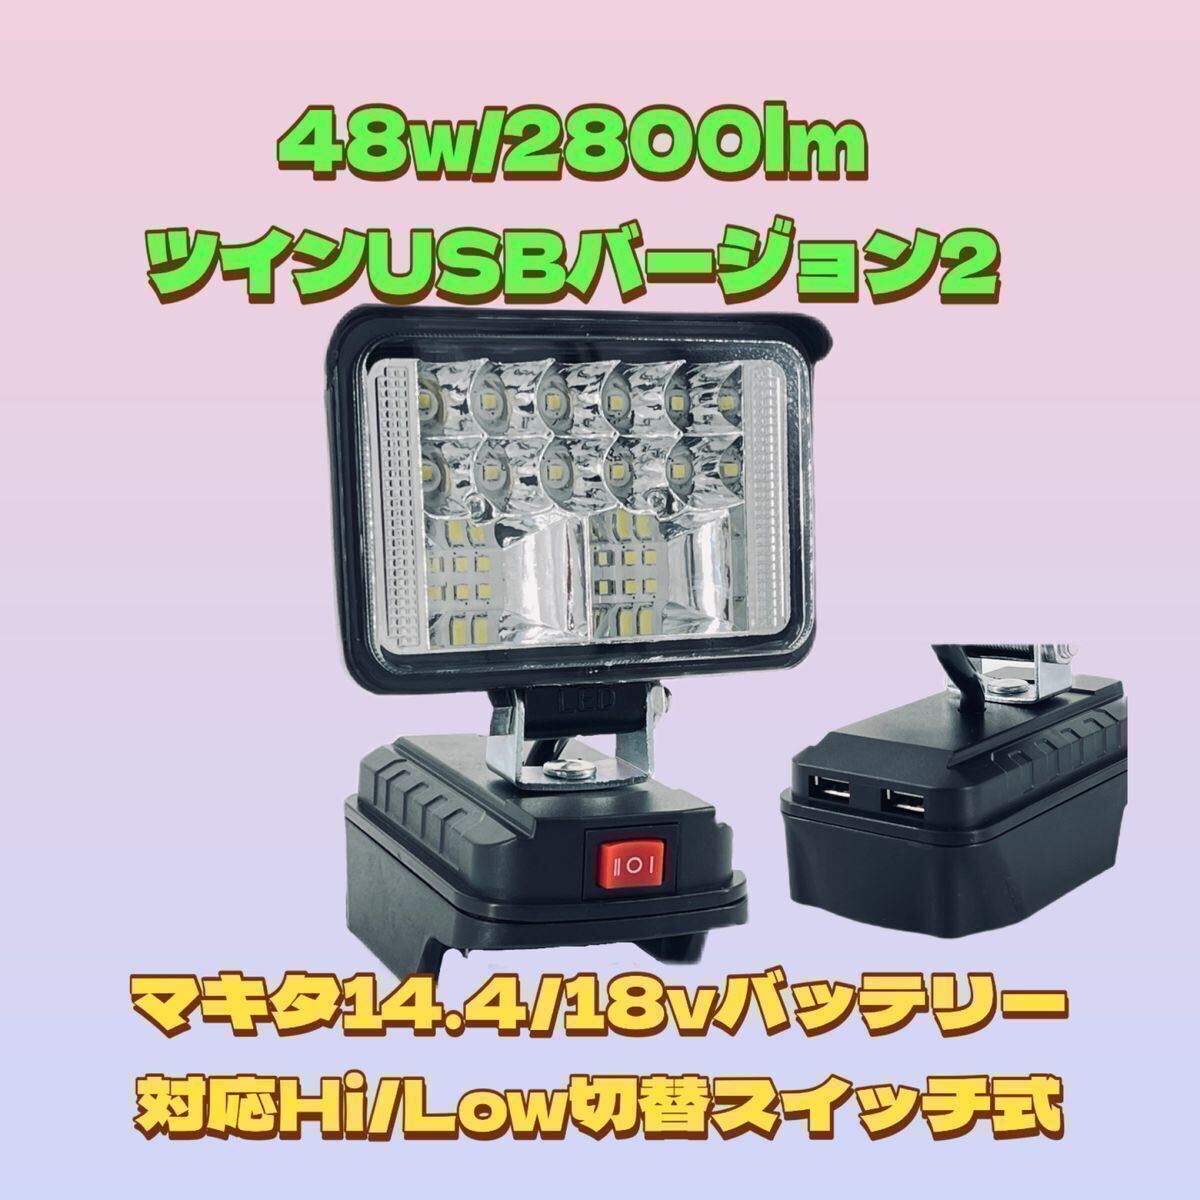 送料無料 48w /2800lm バージョンⅡ USB出力 2.4A 急速充電 LED作業灯 LED投光器 マキタ バッテリー 対応 災害 緊急 防災 アウトドア _画像1